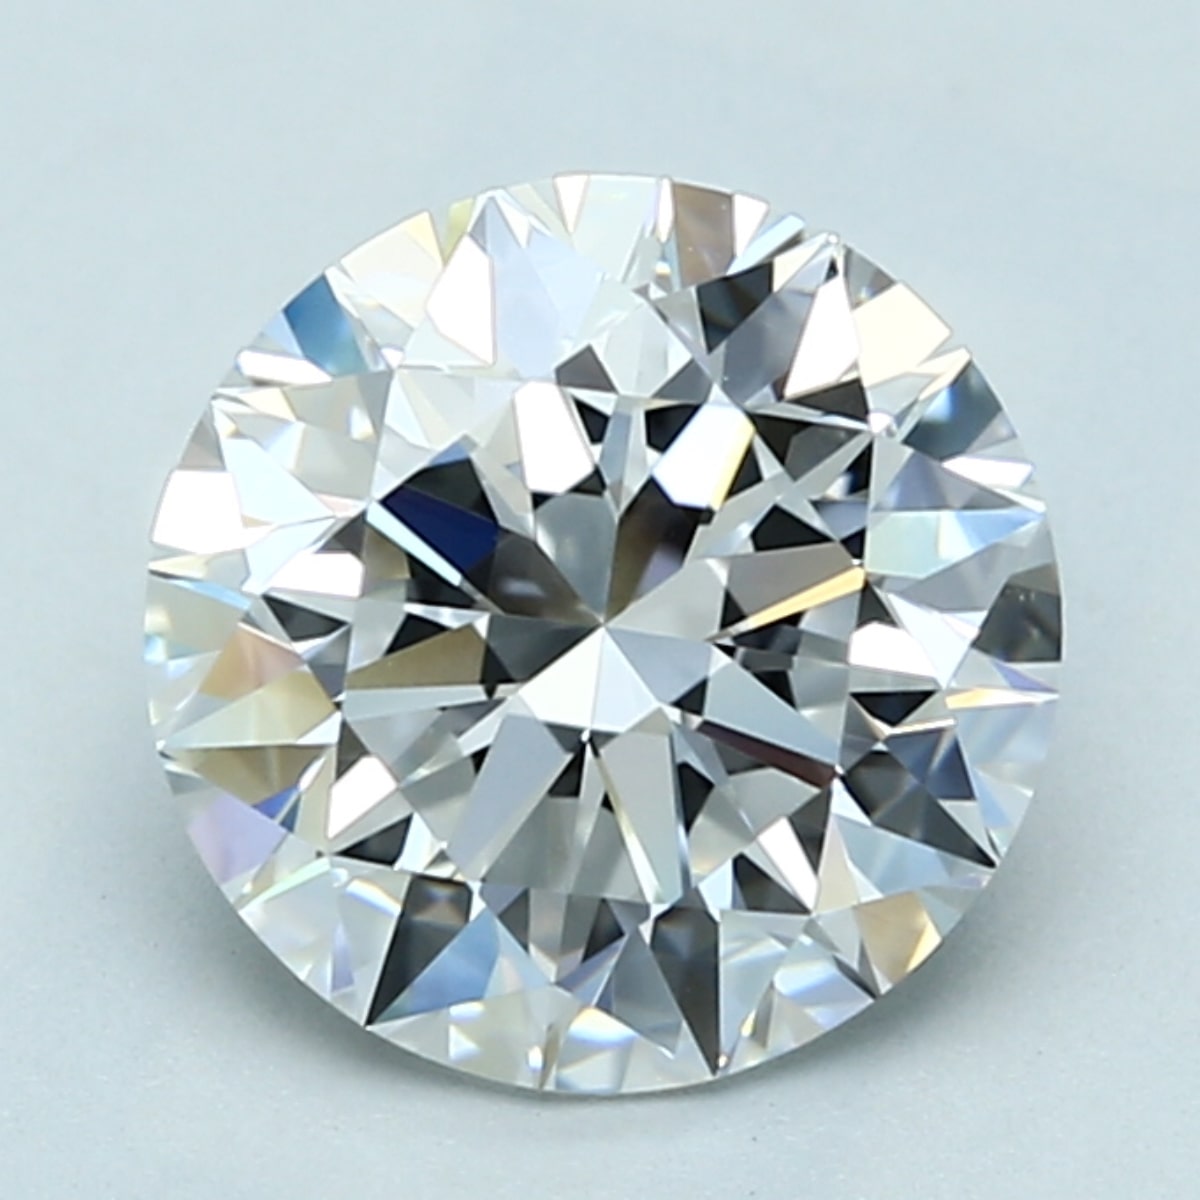 2.5 carat D color diamond